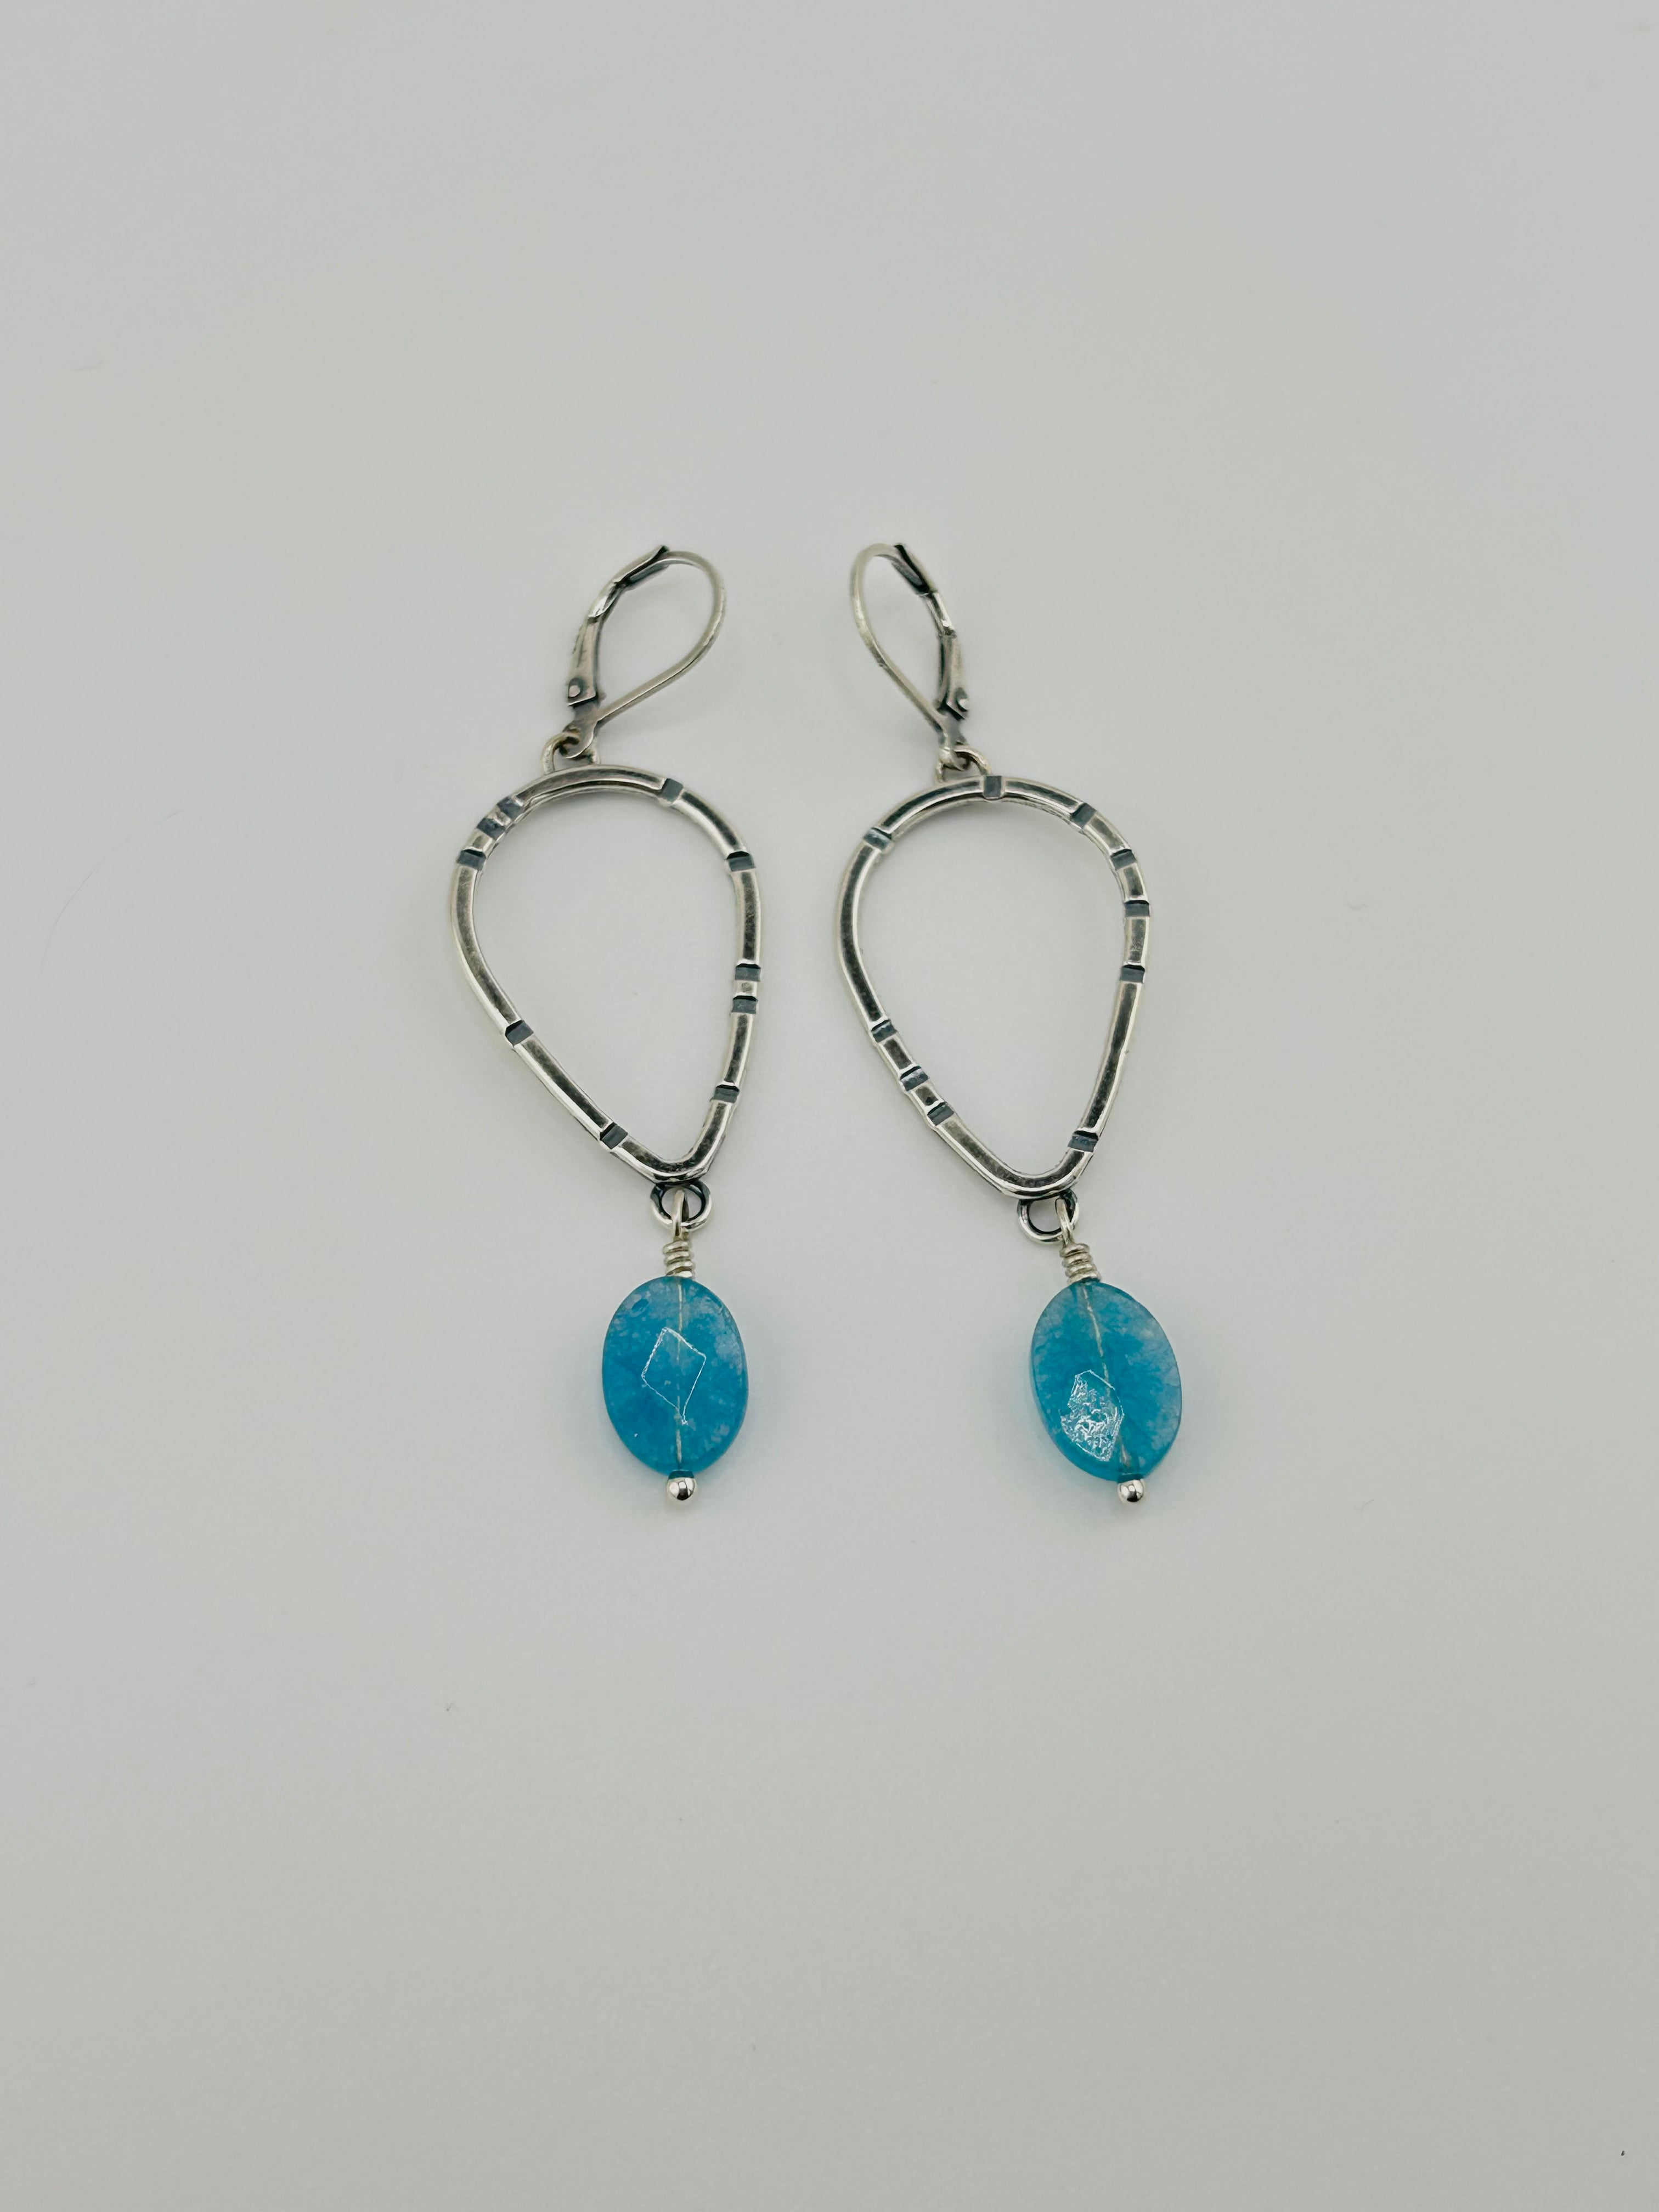 Anvil Teardrop Hoop Earrings with Stamped Sterling Silver and Blue Aquastone